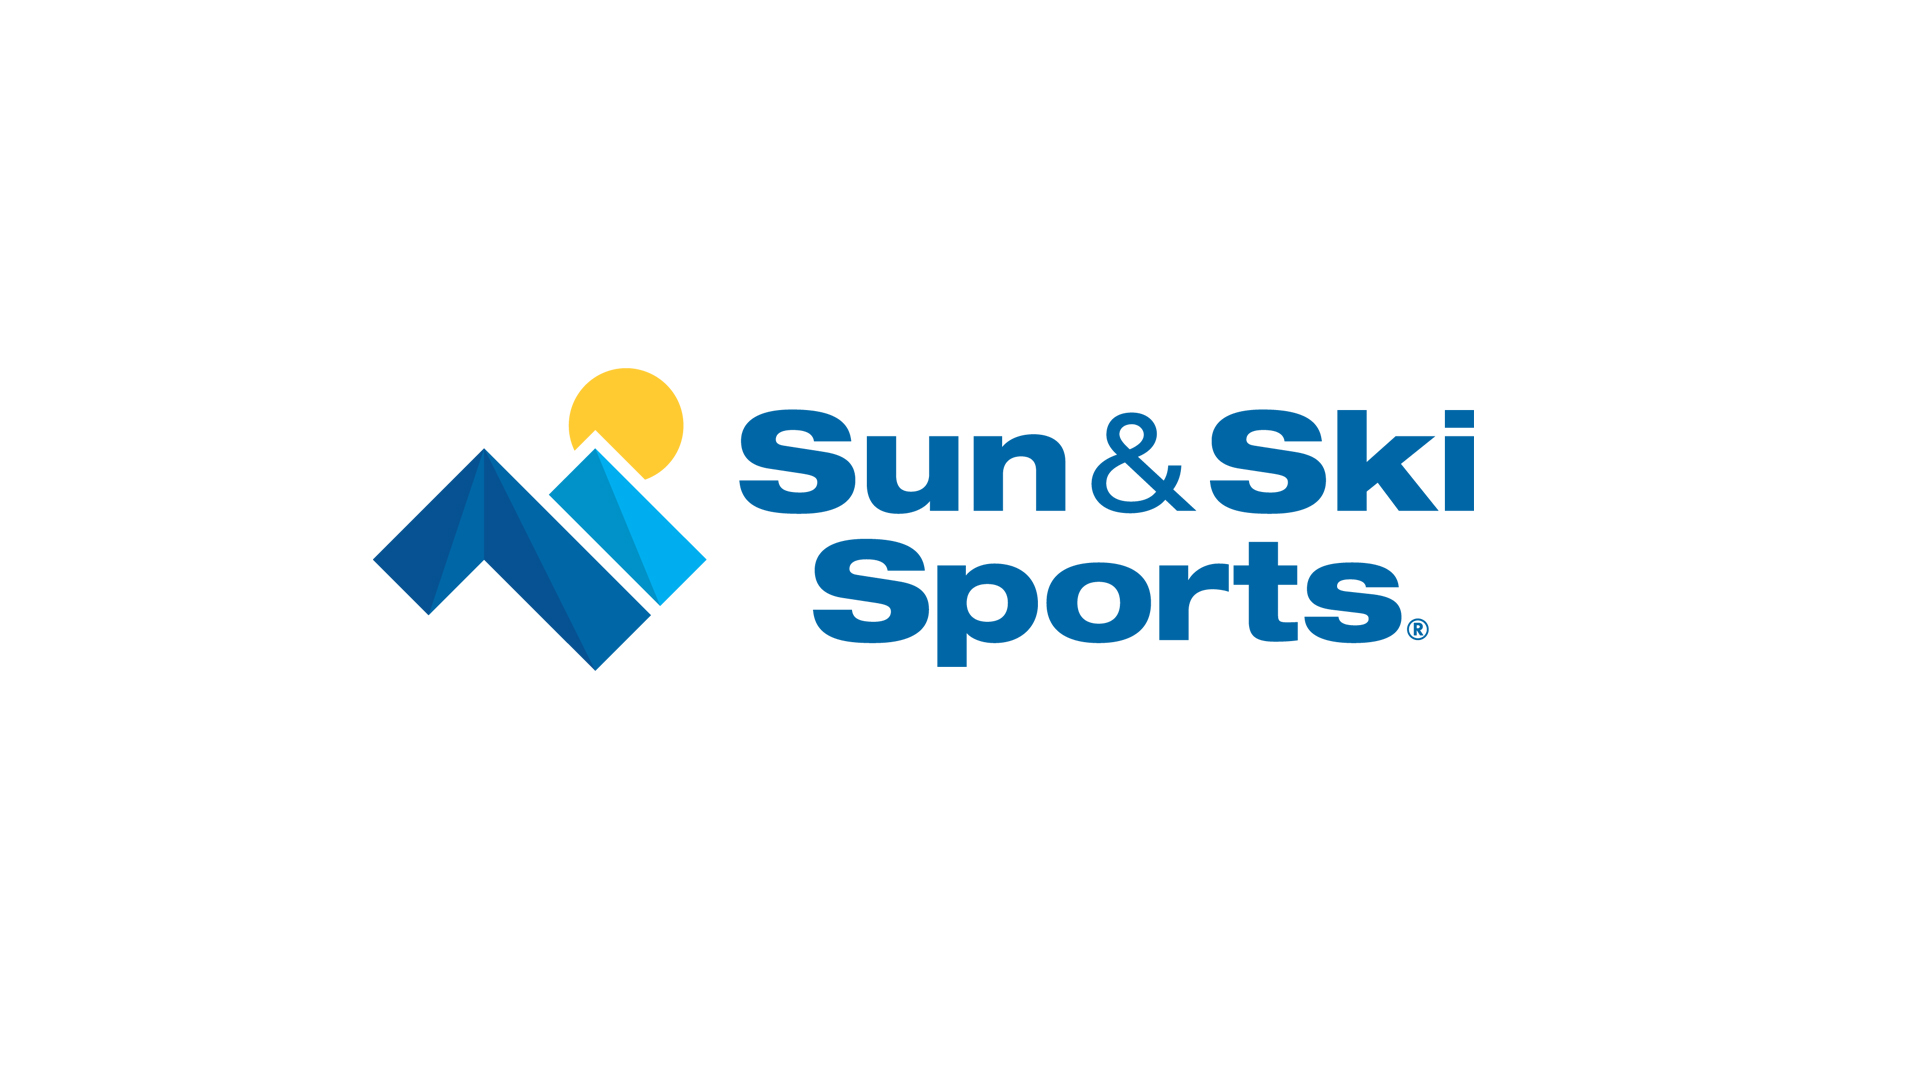 2Sun & Ski Sports